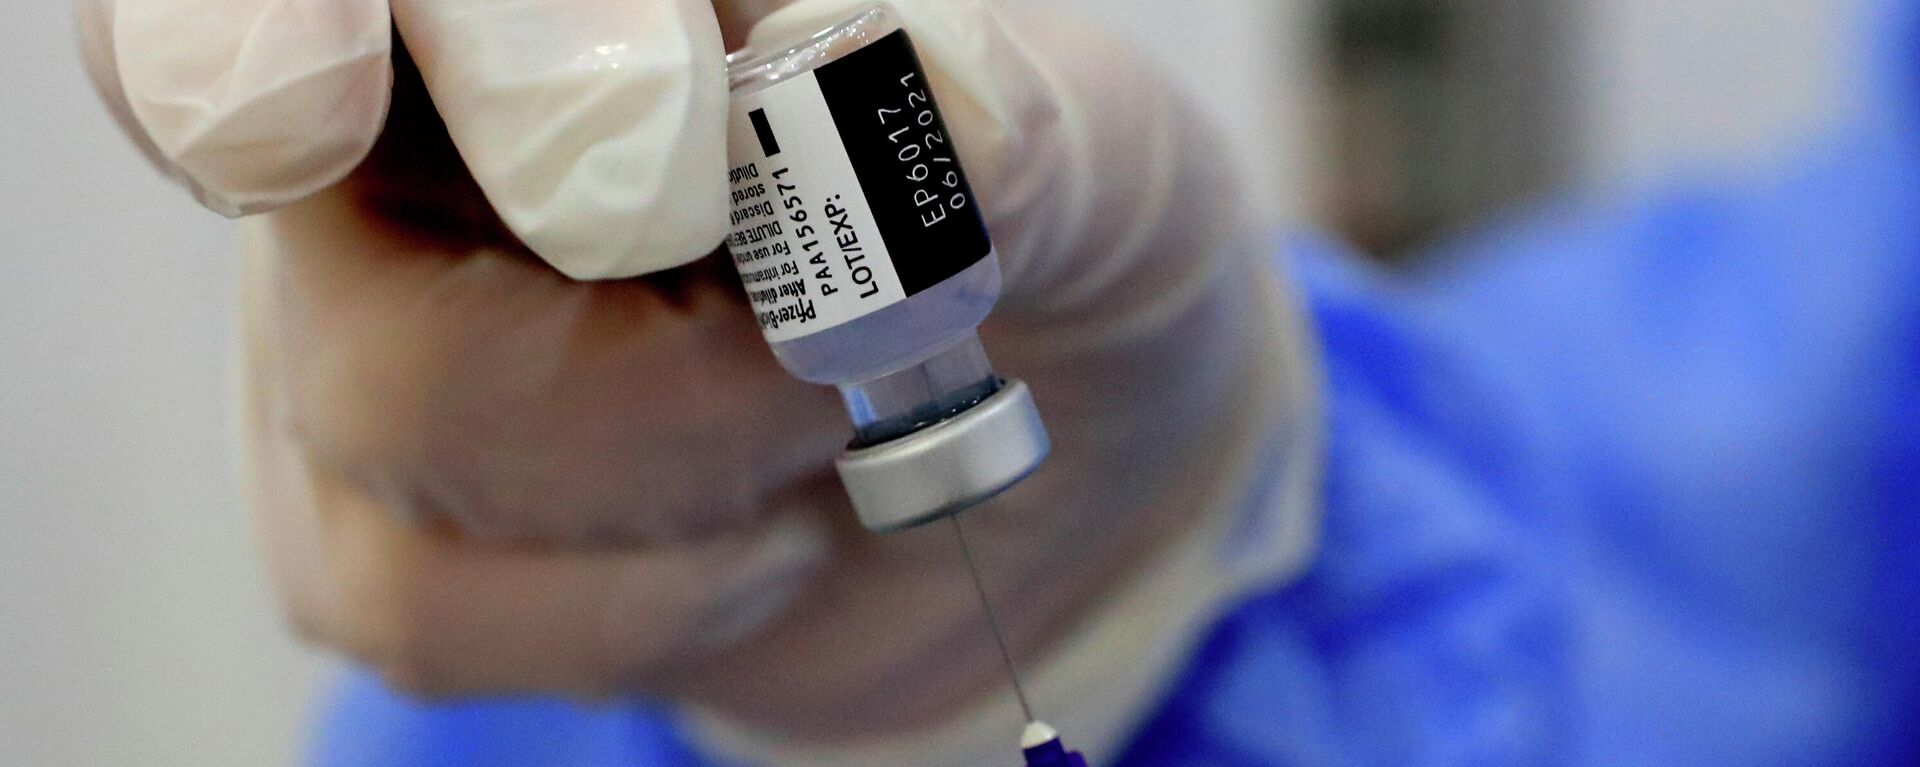 Una enfermera prepara una jeringa de la vacuna contra el coronavirus de Pfizer-BioNTech COVID-19 durante una campaña de vacunación en Beirut, Líbano, 16 de febrero de 2021. - Sputnik Mundo, 1920, 03.03.2021